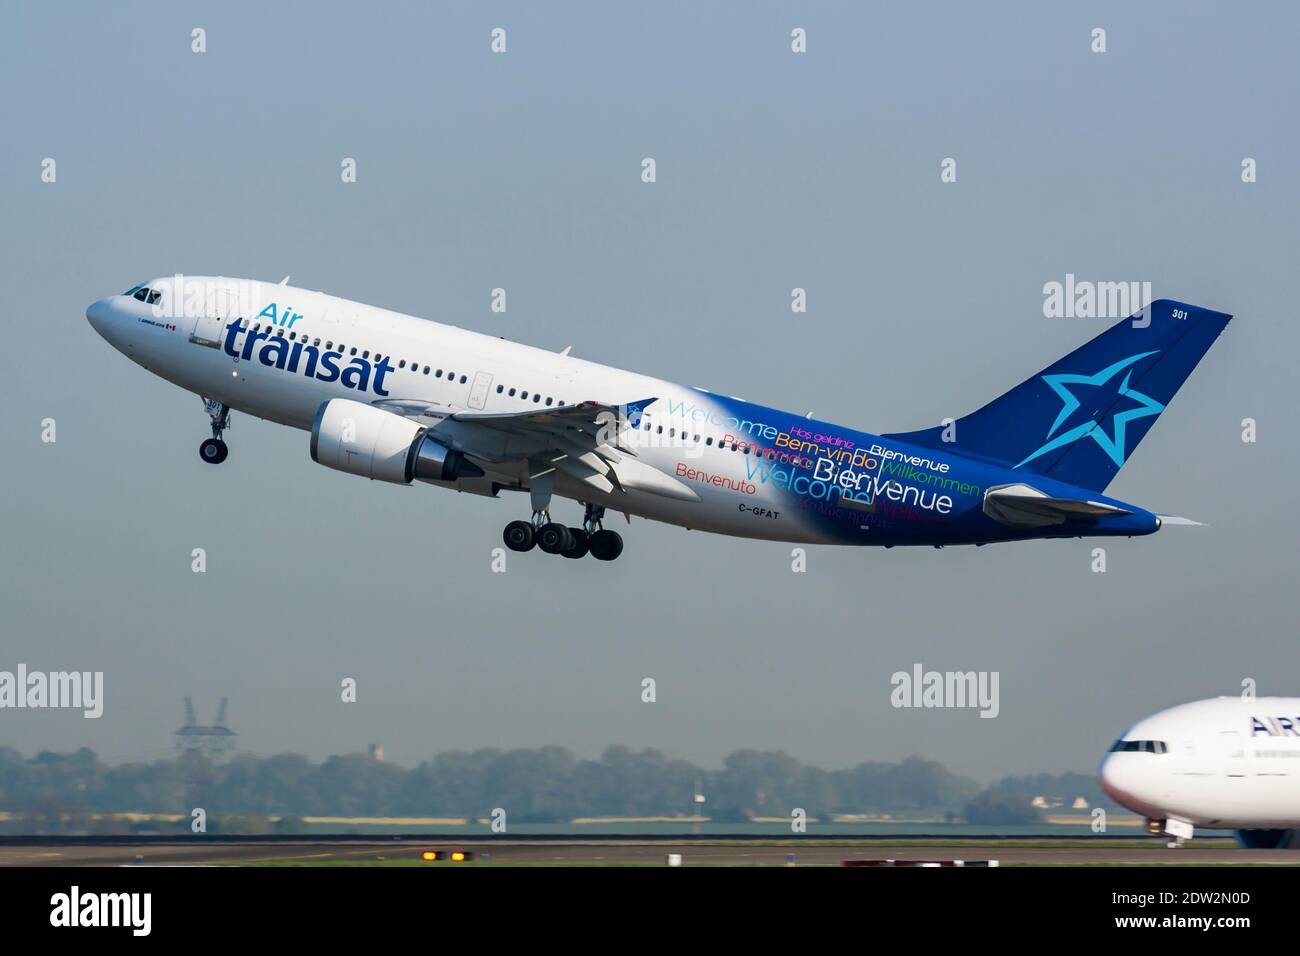 Paris / France - April 24, 2015: Air Transat Airbus A310 C-GFAT passenger plane departure and take off at Paris Charles de Gaulle Airport Stock Photo